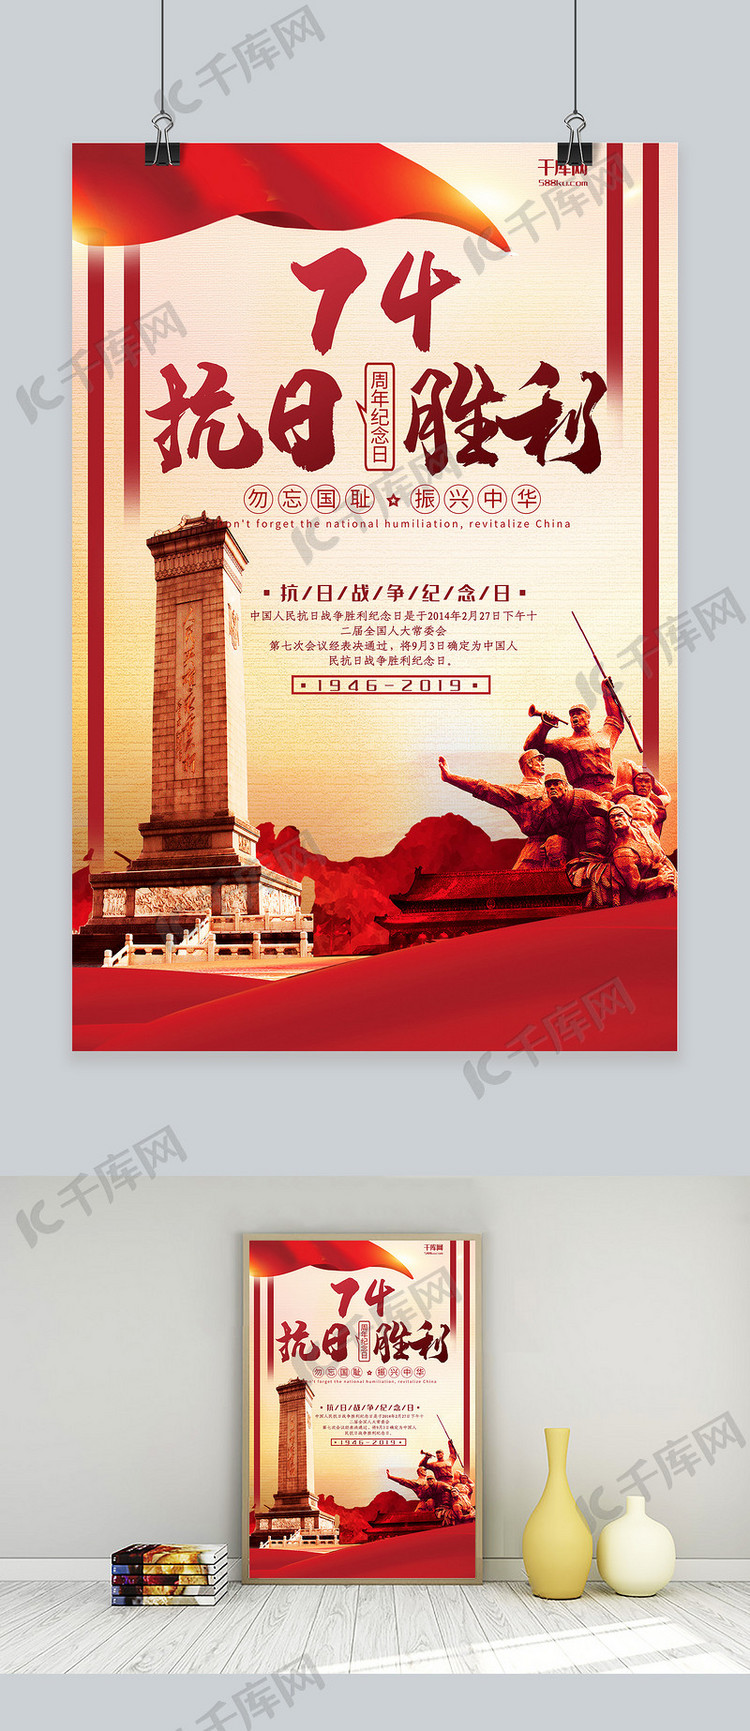 抗日战争纪念日红色石像节日宣传海报